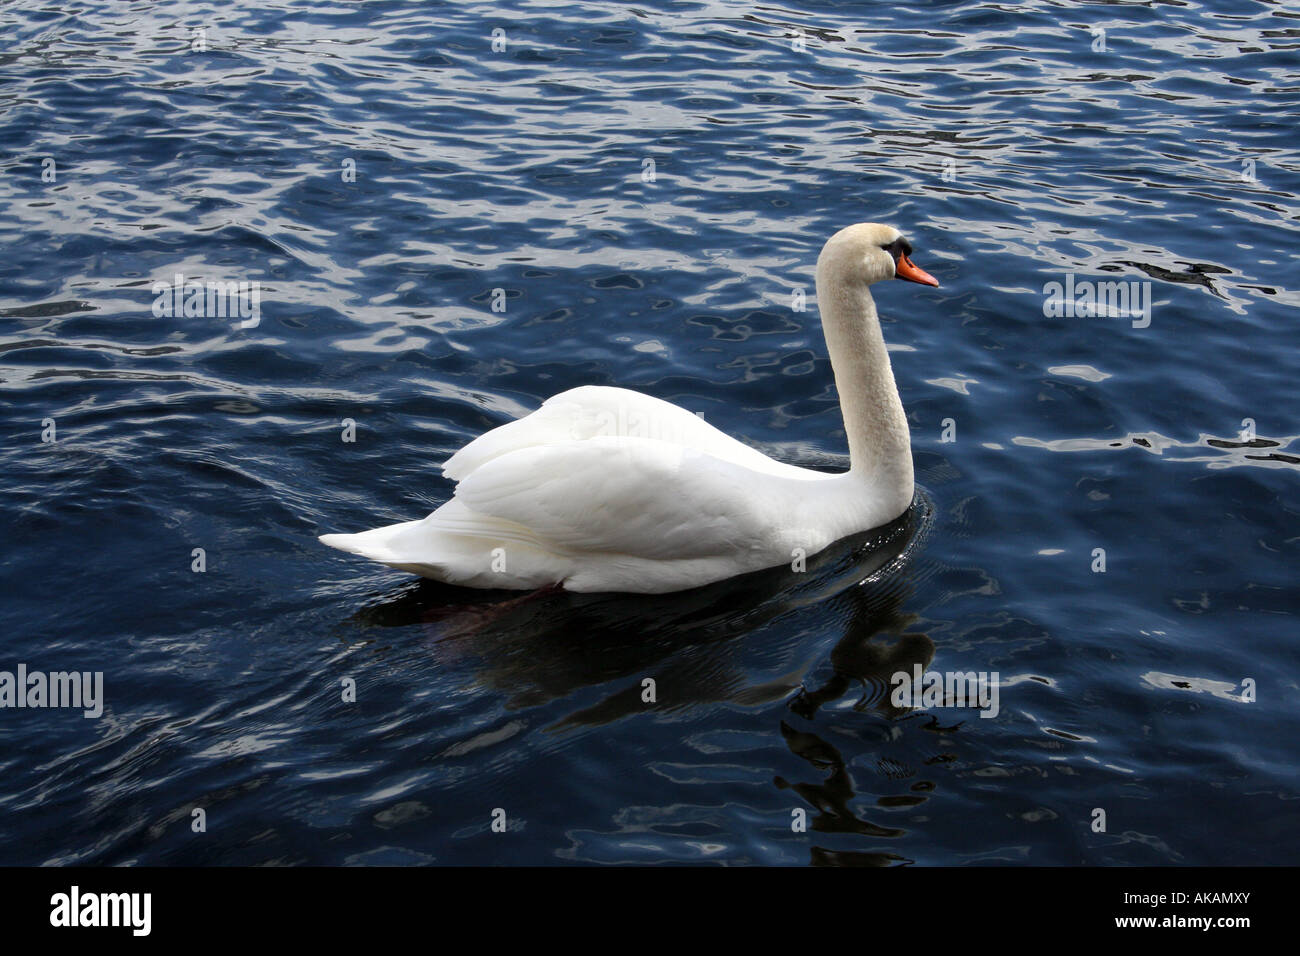 Beautiful swan swimming in lake Stock Photo